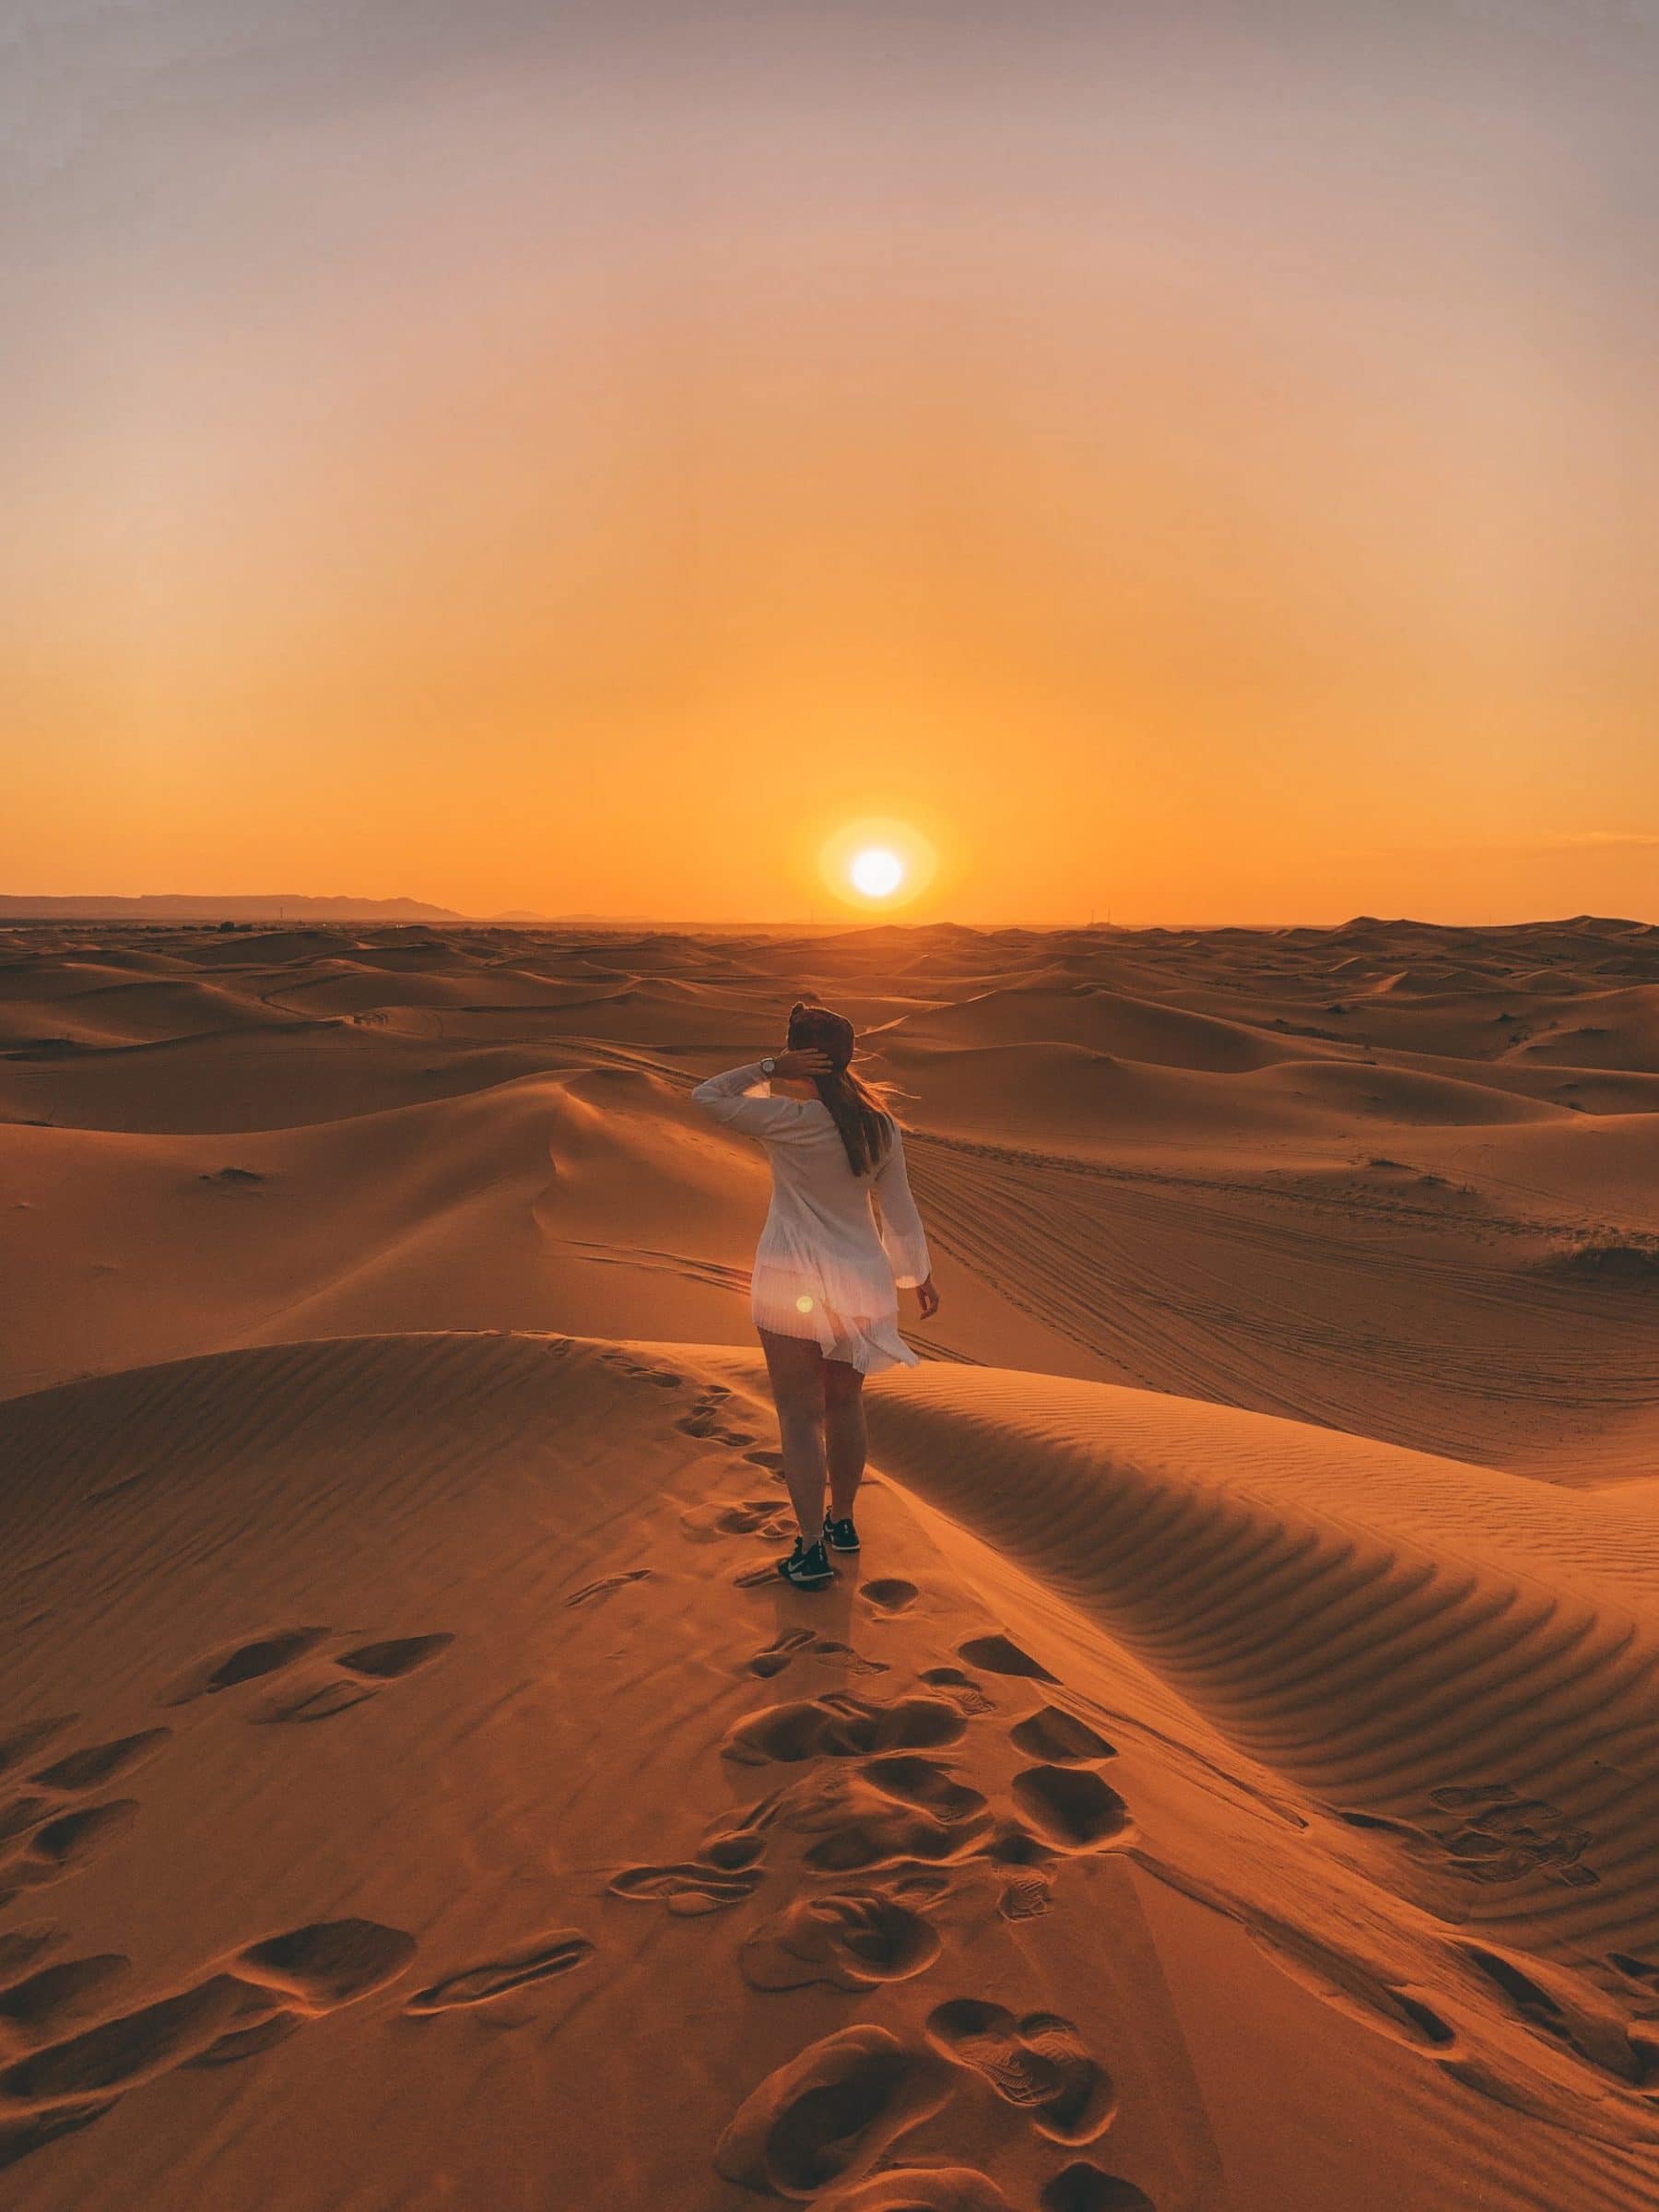 De zonsondergang in de Sahara woestijn - Marokko